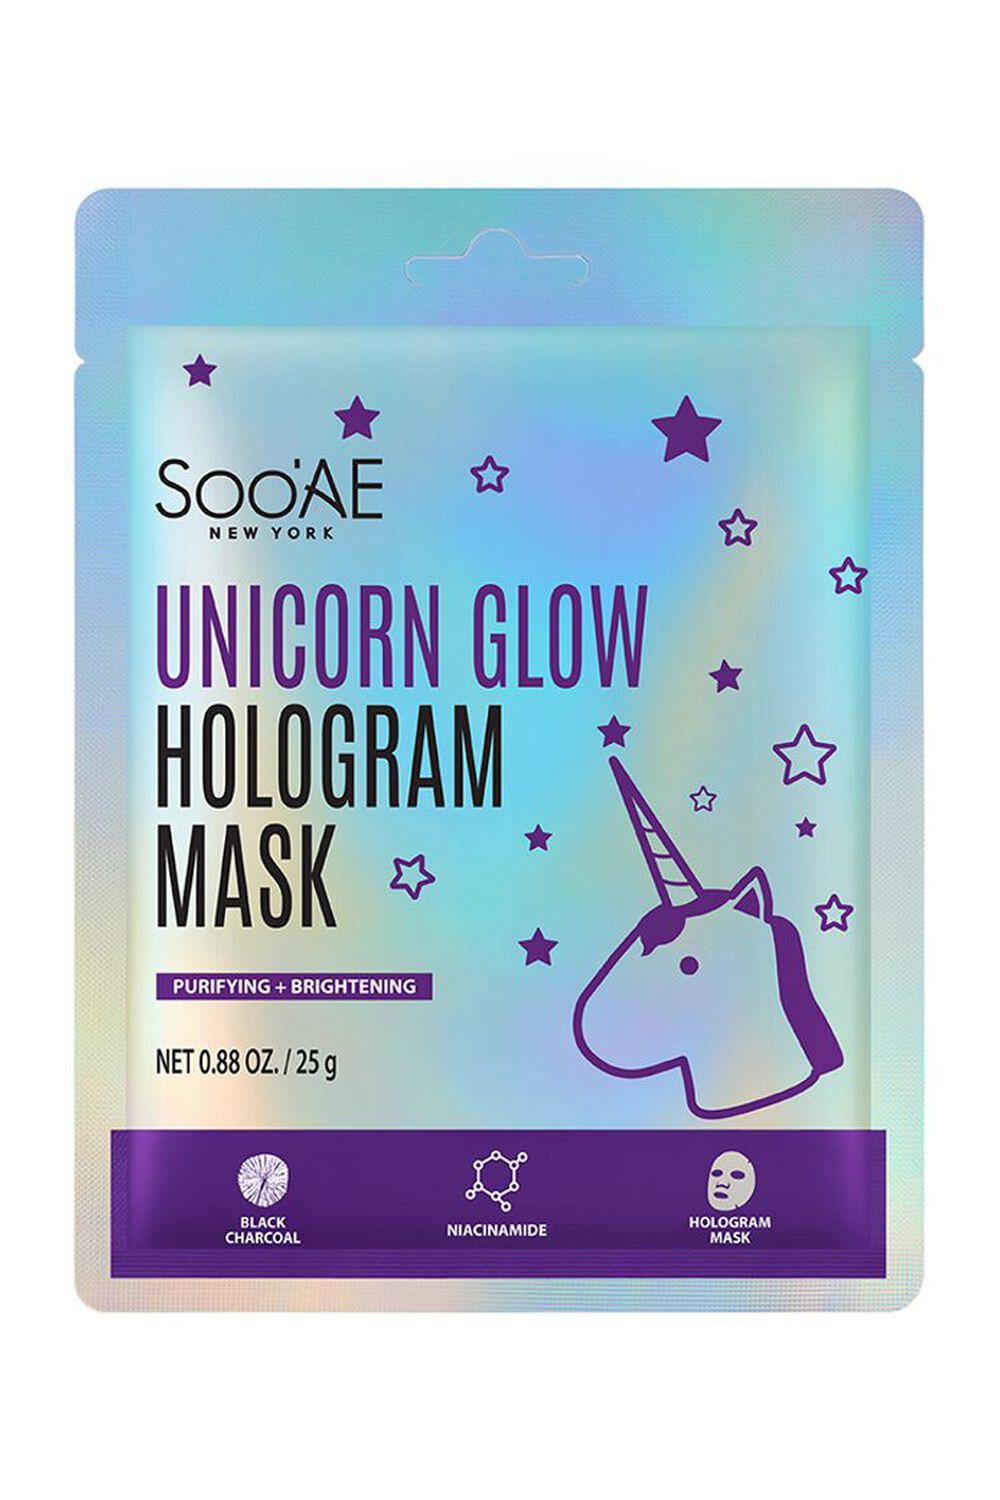 PURPLE SooAe Unicorn Glow Hologram Mask, image 1